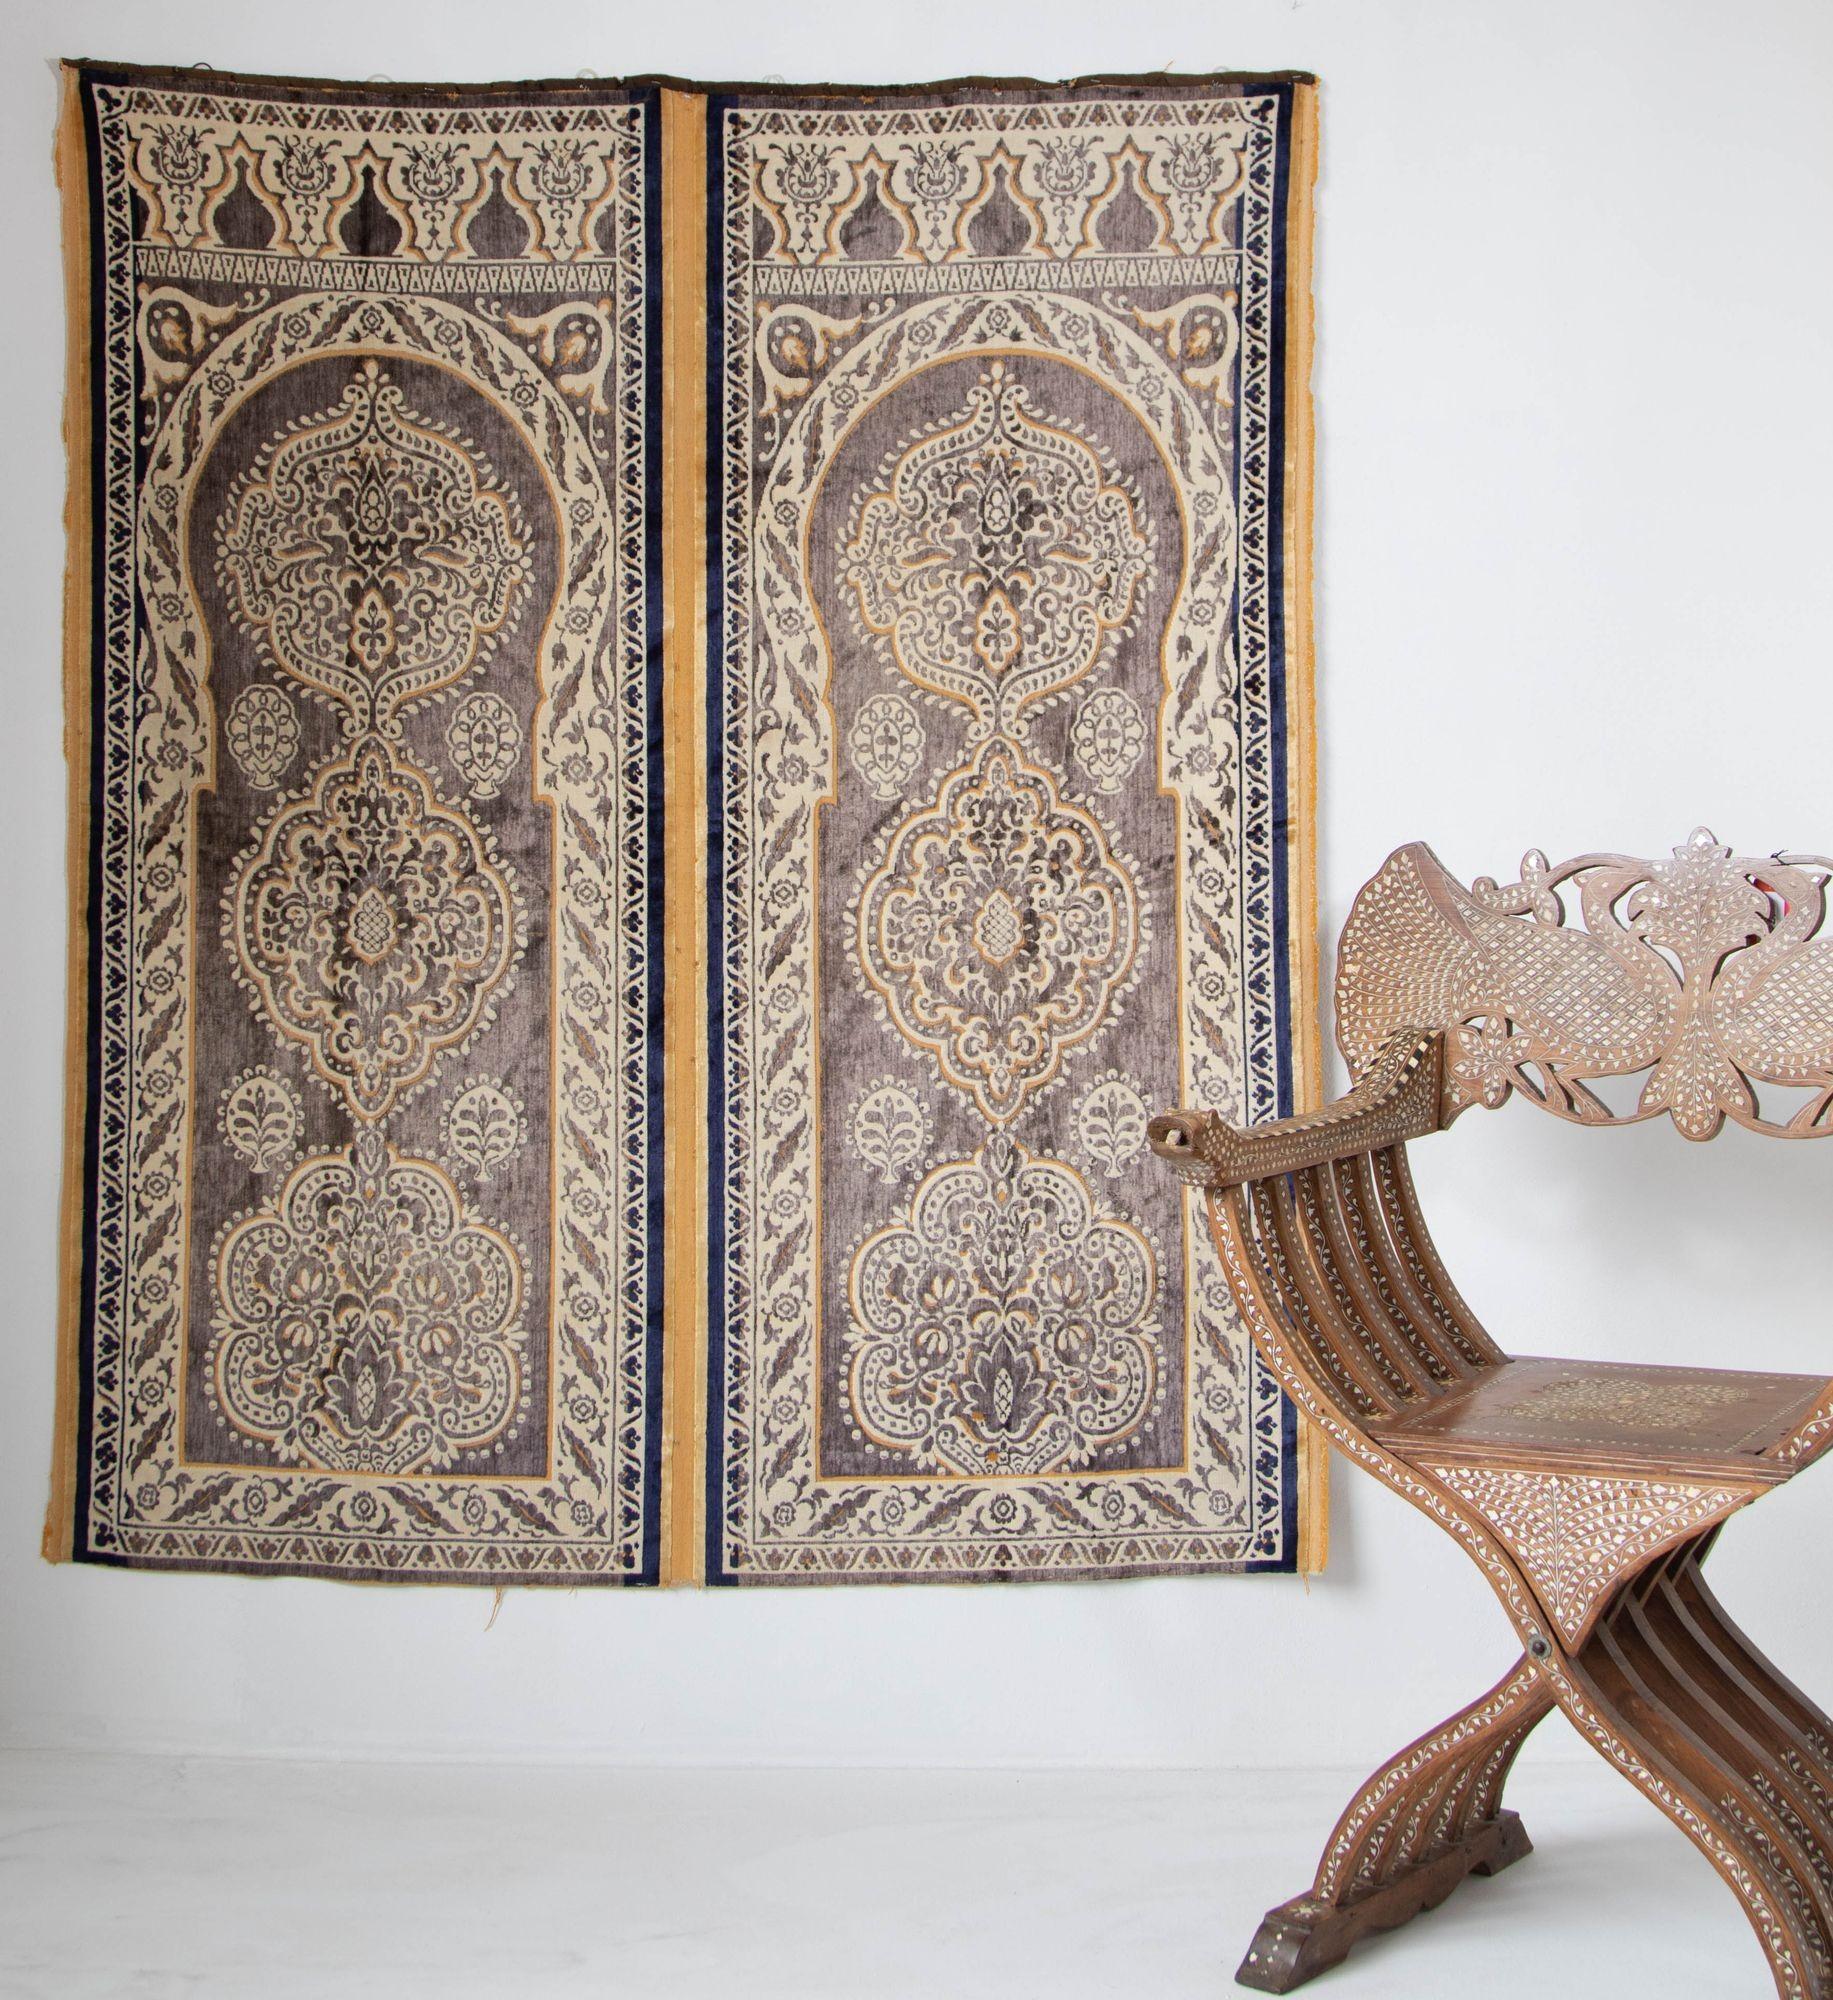 Antiker marokkanischer maurischer Seidentextil-Wandteppich Hiti Ottoman geleerte Seidensamtwandbespannung.
Schnittmuster aus Seidensamt, hellbraun, gelb, cremefarben und blau, das Paneel besteht aus zwei maurischen Bögen mit islamischen